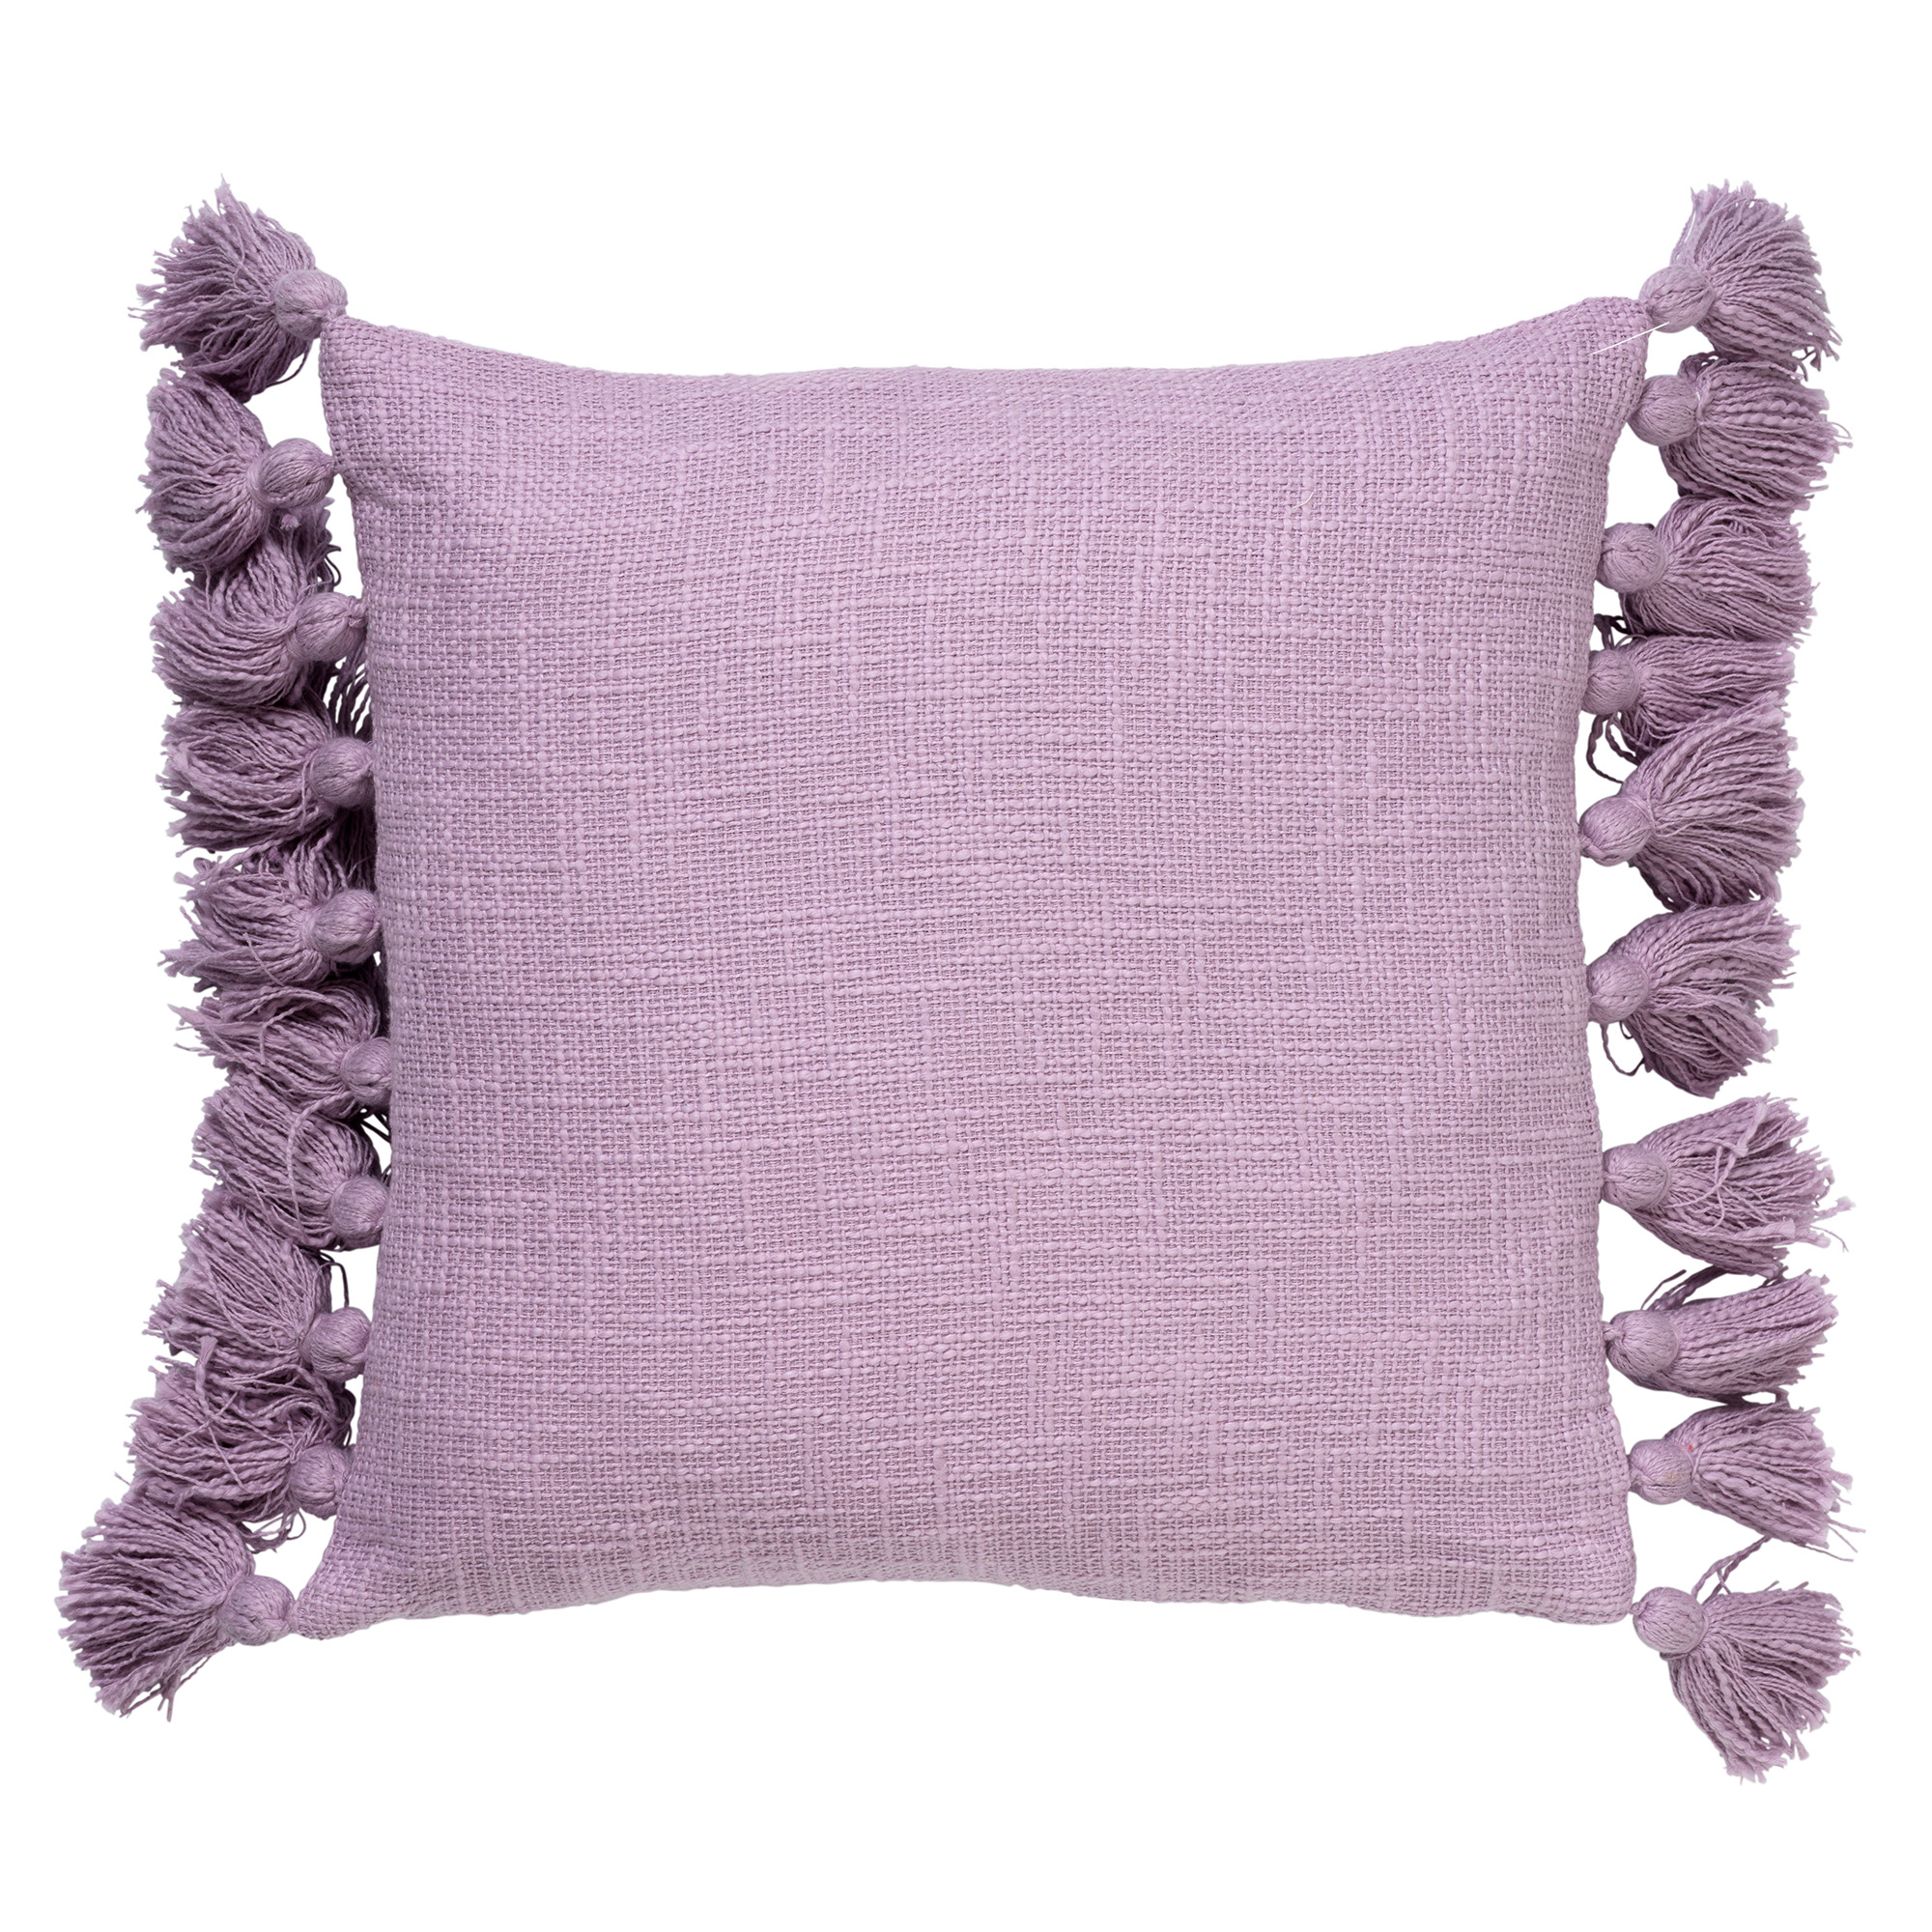 RUBY - Sierkussen katoen 45x45 cm - Lavender Frost - paars - pasteltint - met flosjes 